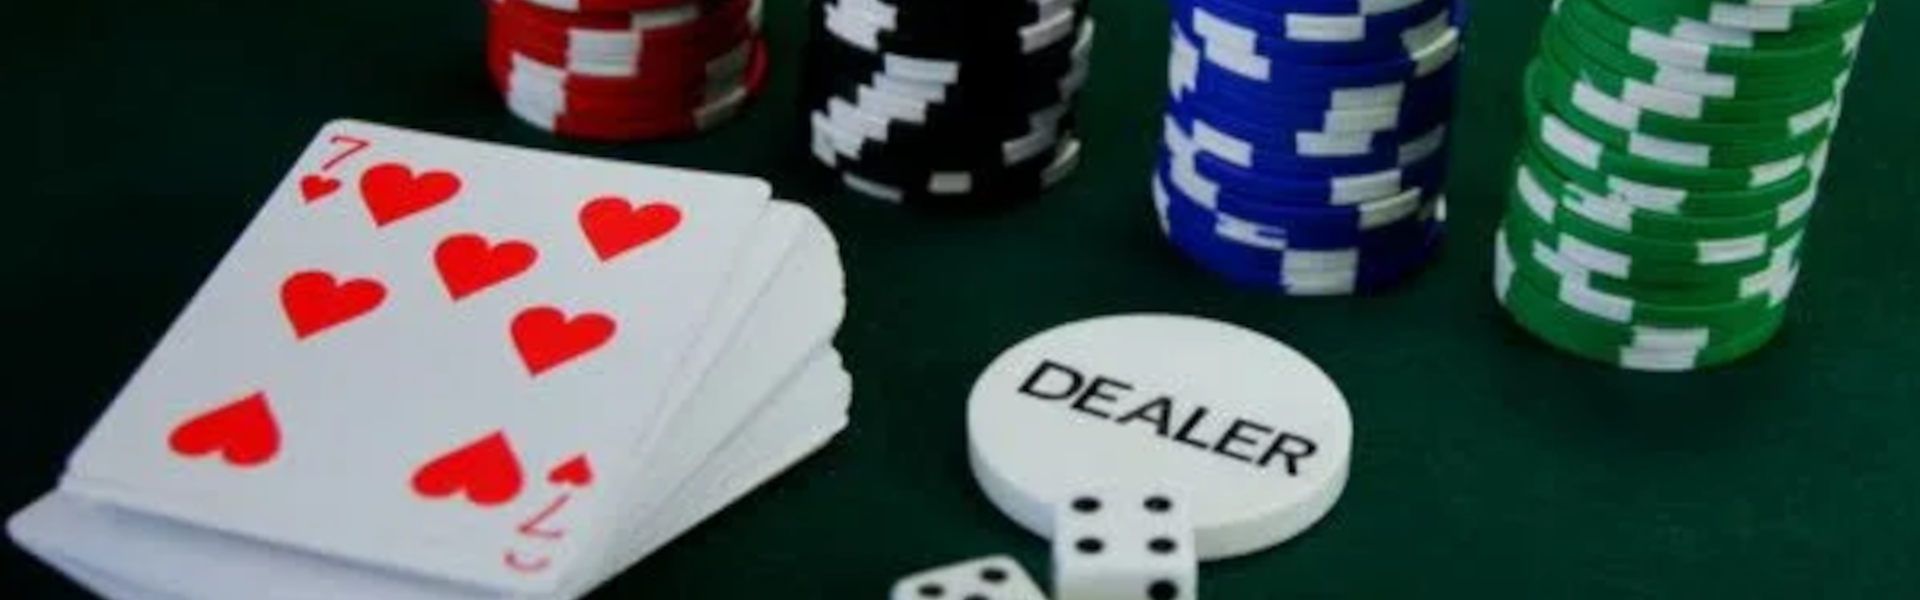 Básicos do Póquer